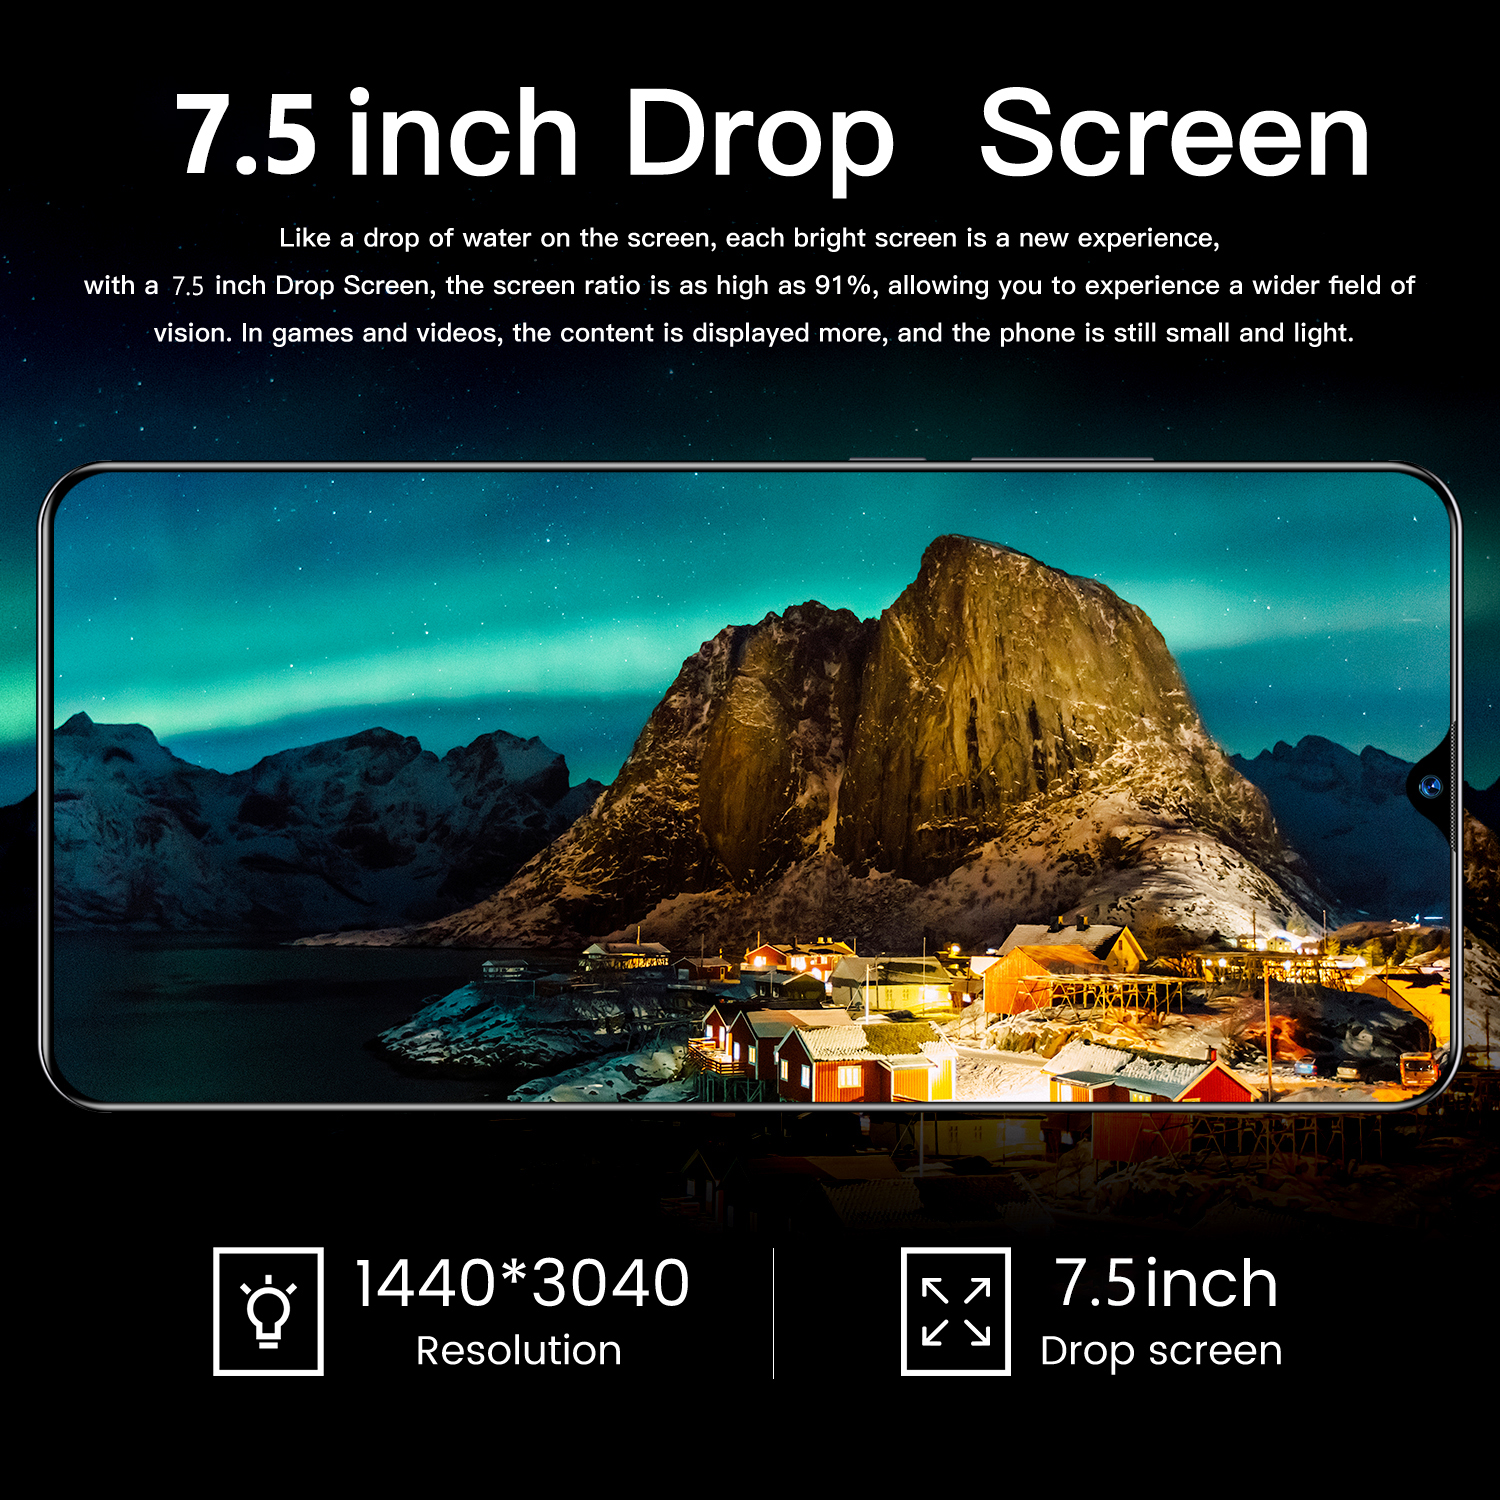 ภาพที่ให้รายละเอียดเกี่ยวกับ 【จัดส่งในไทยภายใน 3 วัน/ฟรีของแถม】สมาร์ทโฟน oqqo A15/A16 มือถือราคาถูก จอใหญ่ สแกนได้ 7.5 นิ้ว หน้าจอ Full HD 12G+512G กล้องหน้า 24MP กล้องหลัง 48MP แบตเตอรี่ 5600mAh รองรับซิมไทยทั้งหมด การ์ด, การ์ดคู่ส่งสแตนด์บายคู่, คุณสามารถใช้แอพพลิเคชั่น โทรศัพท์เกม